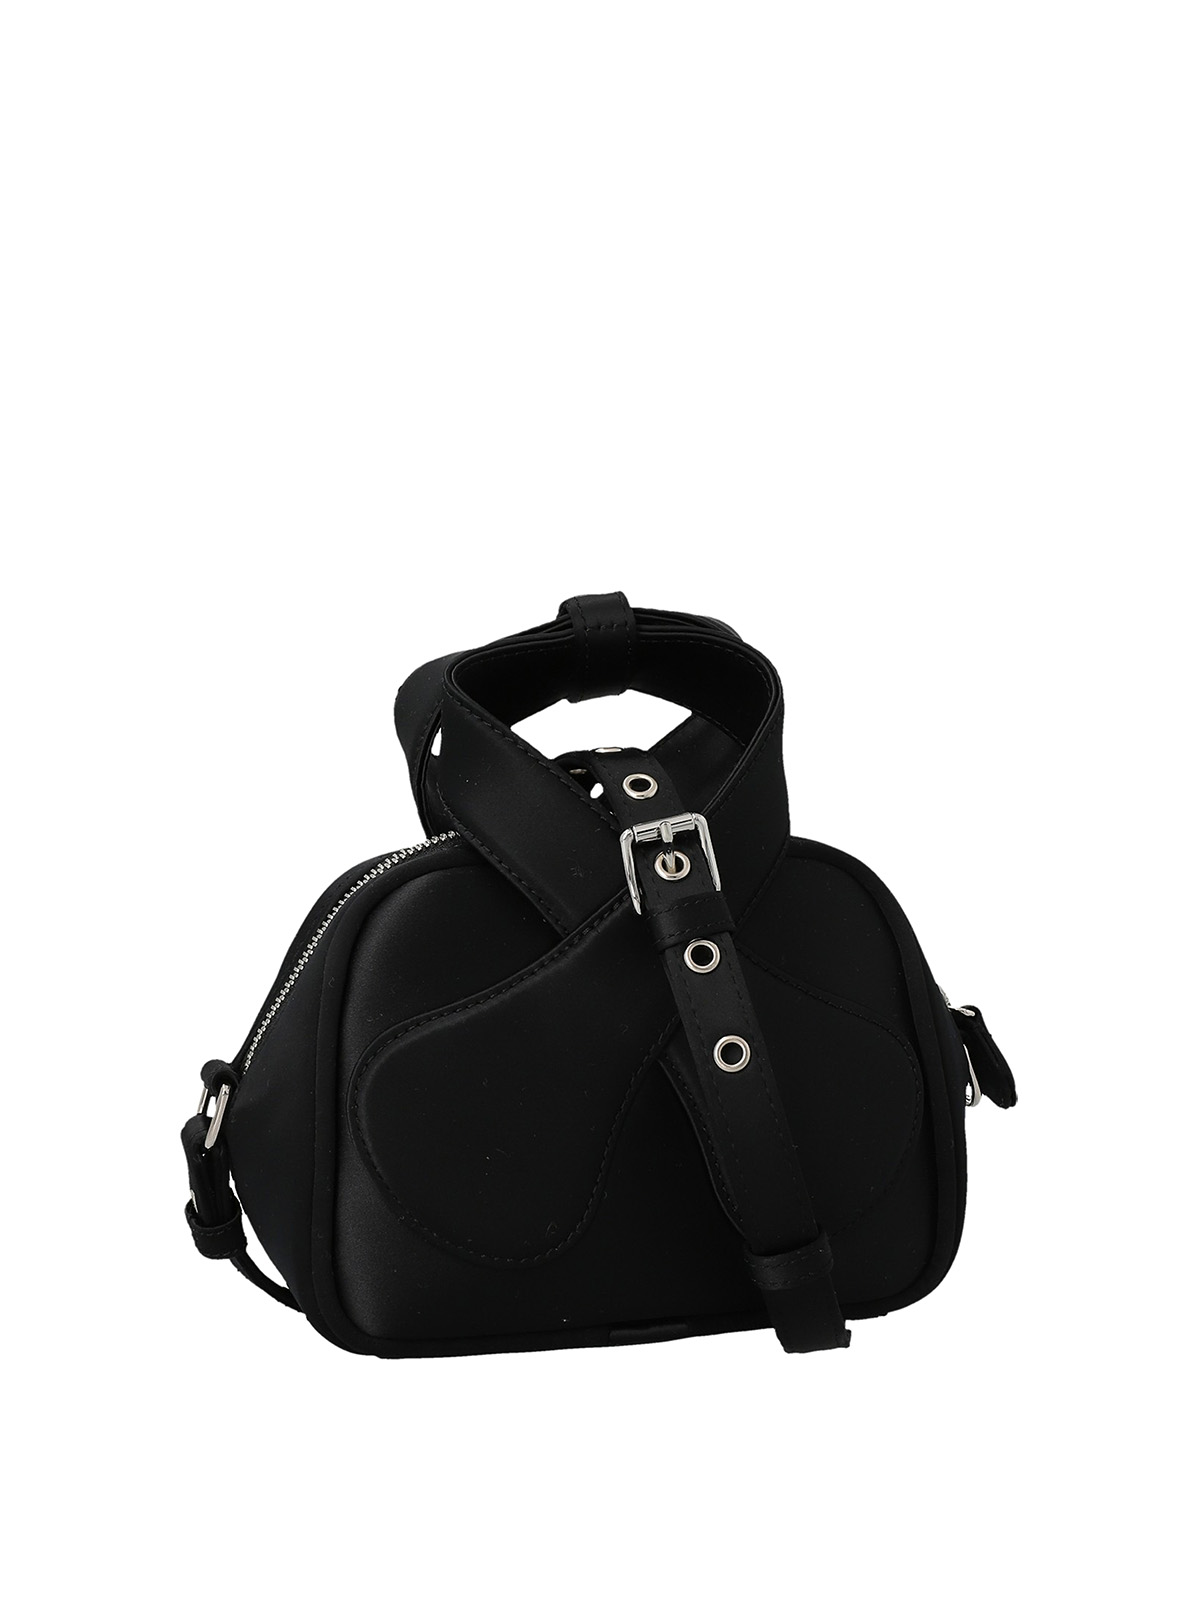 Cross body bags Courreges - Loop mini handbag - 322GSA037PL00849999